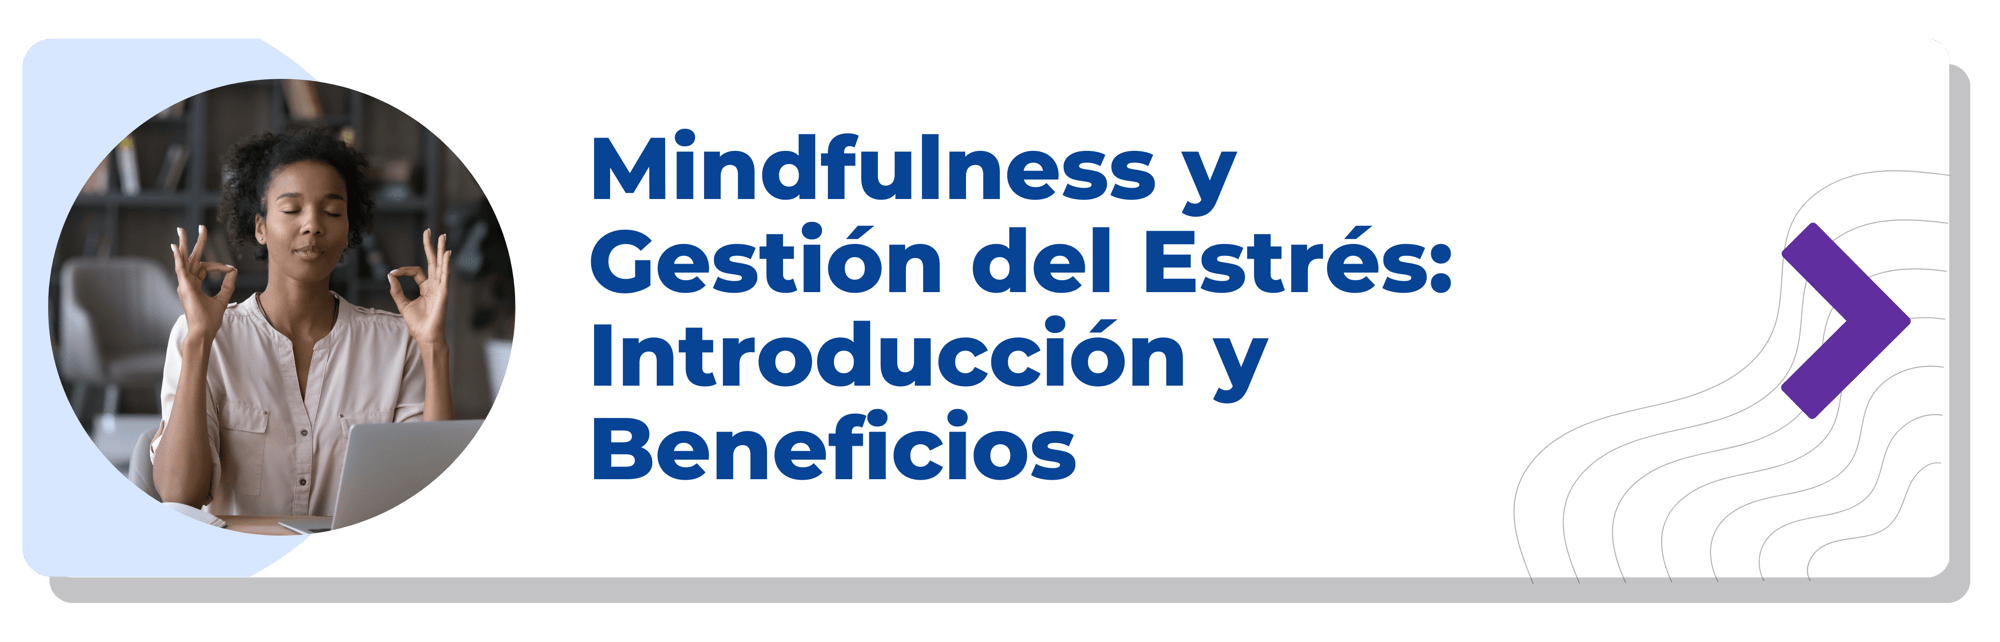 Mindfulness y Gestión del Estrés Introducción y Beneficios-min